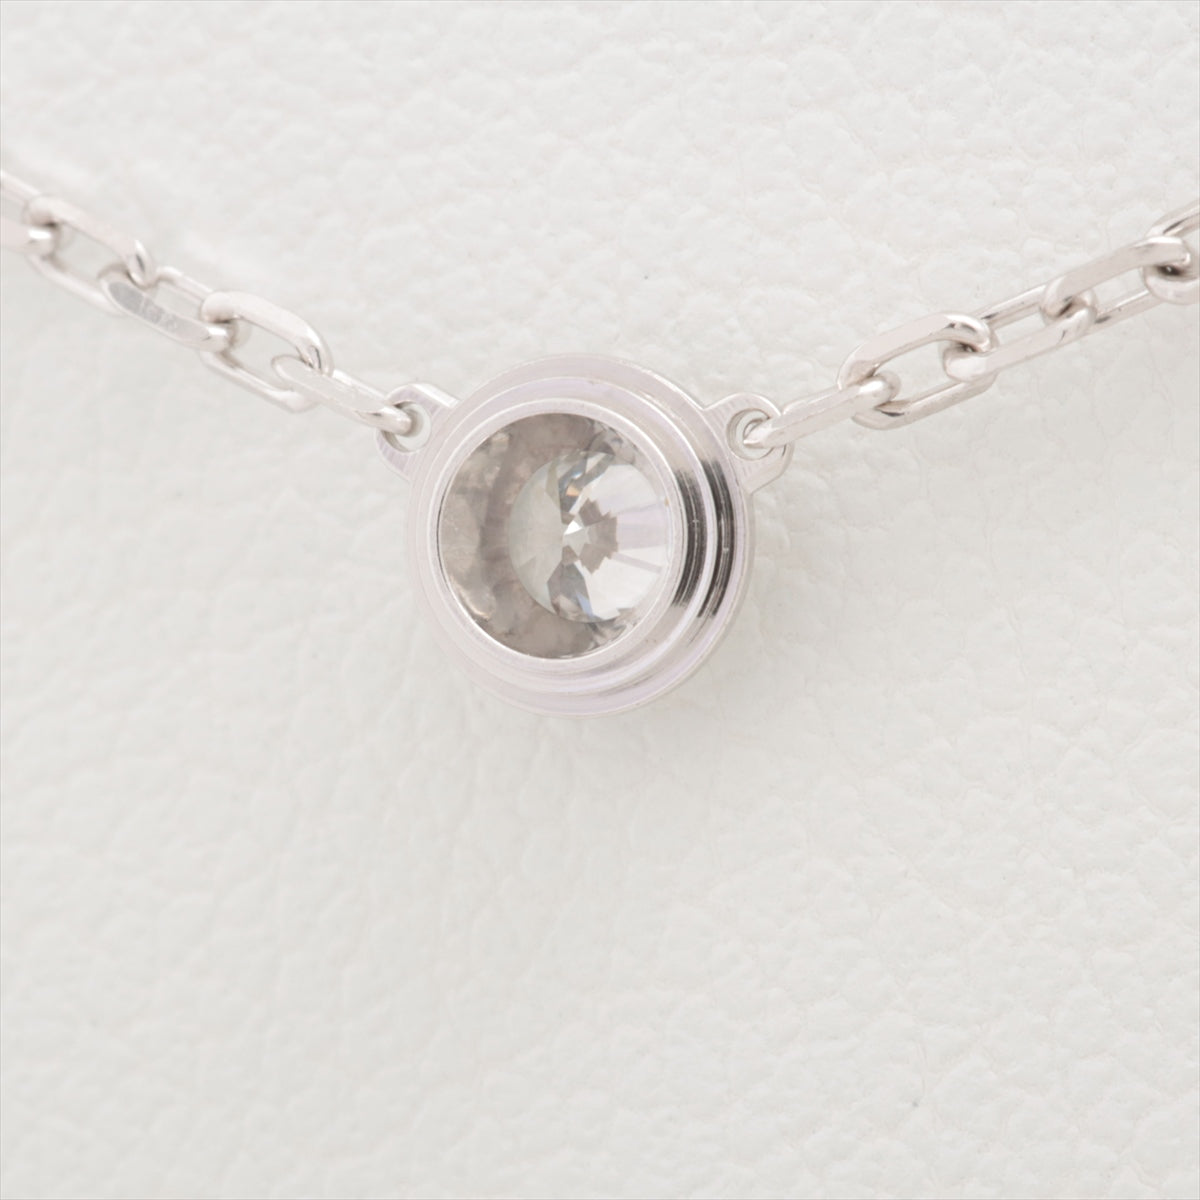 CRB7215400 - Diamants Légers necklace, LM - White gold, diamond - Cartier